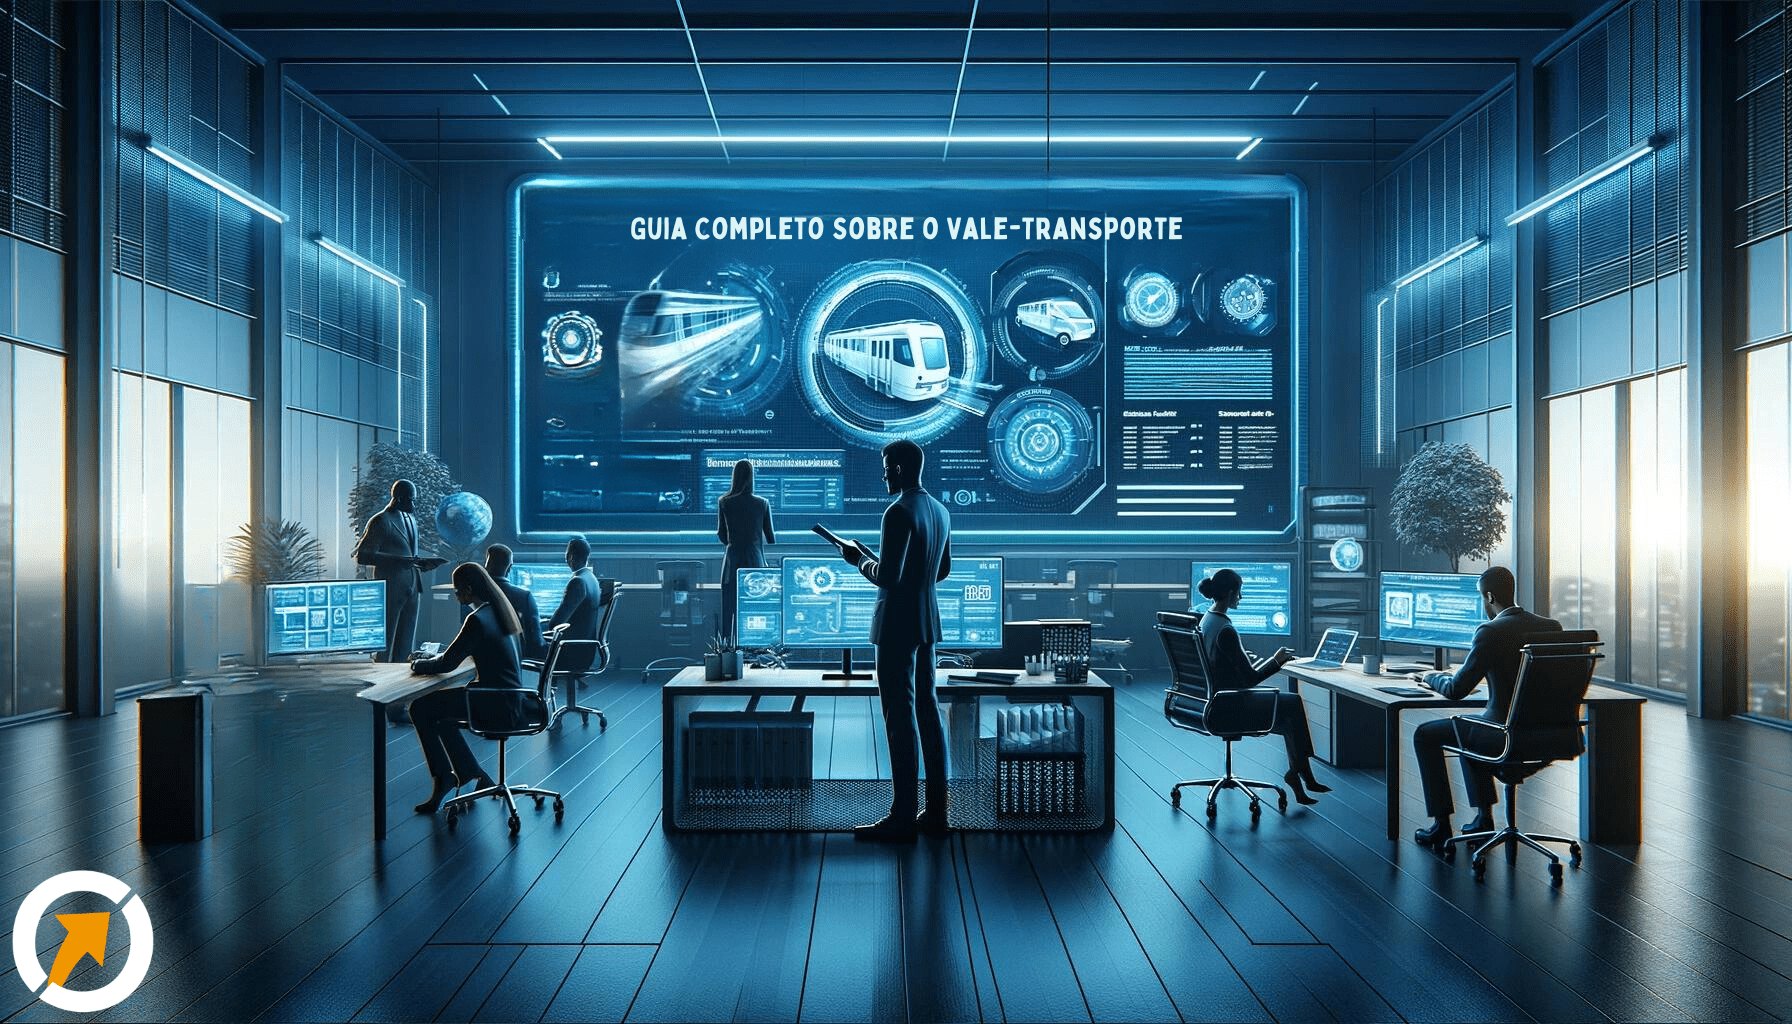 Um ambiente de escritório moderno e futurista em tons de azul, com uma pessoa examinando informações sobre vale-transporte em uma tela digital, simbolizando a importância do gerenciamento de benefícios trabalhistas.